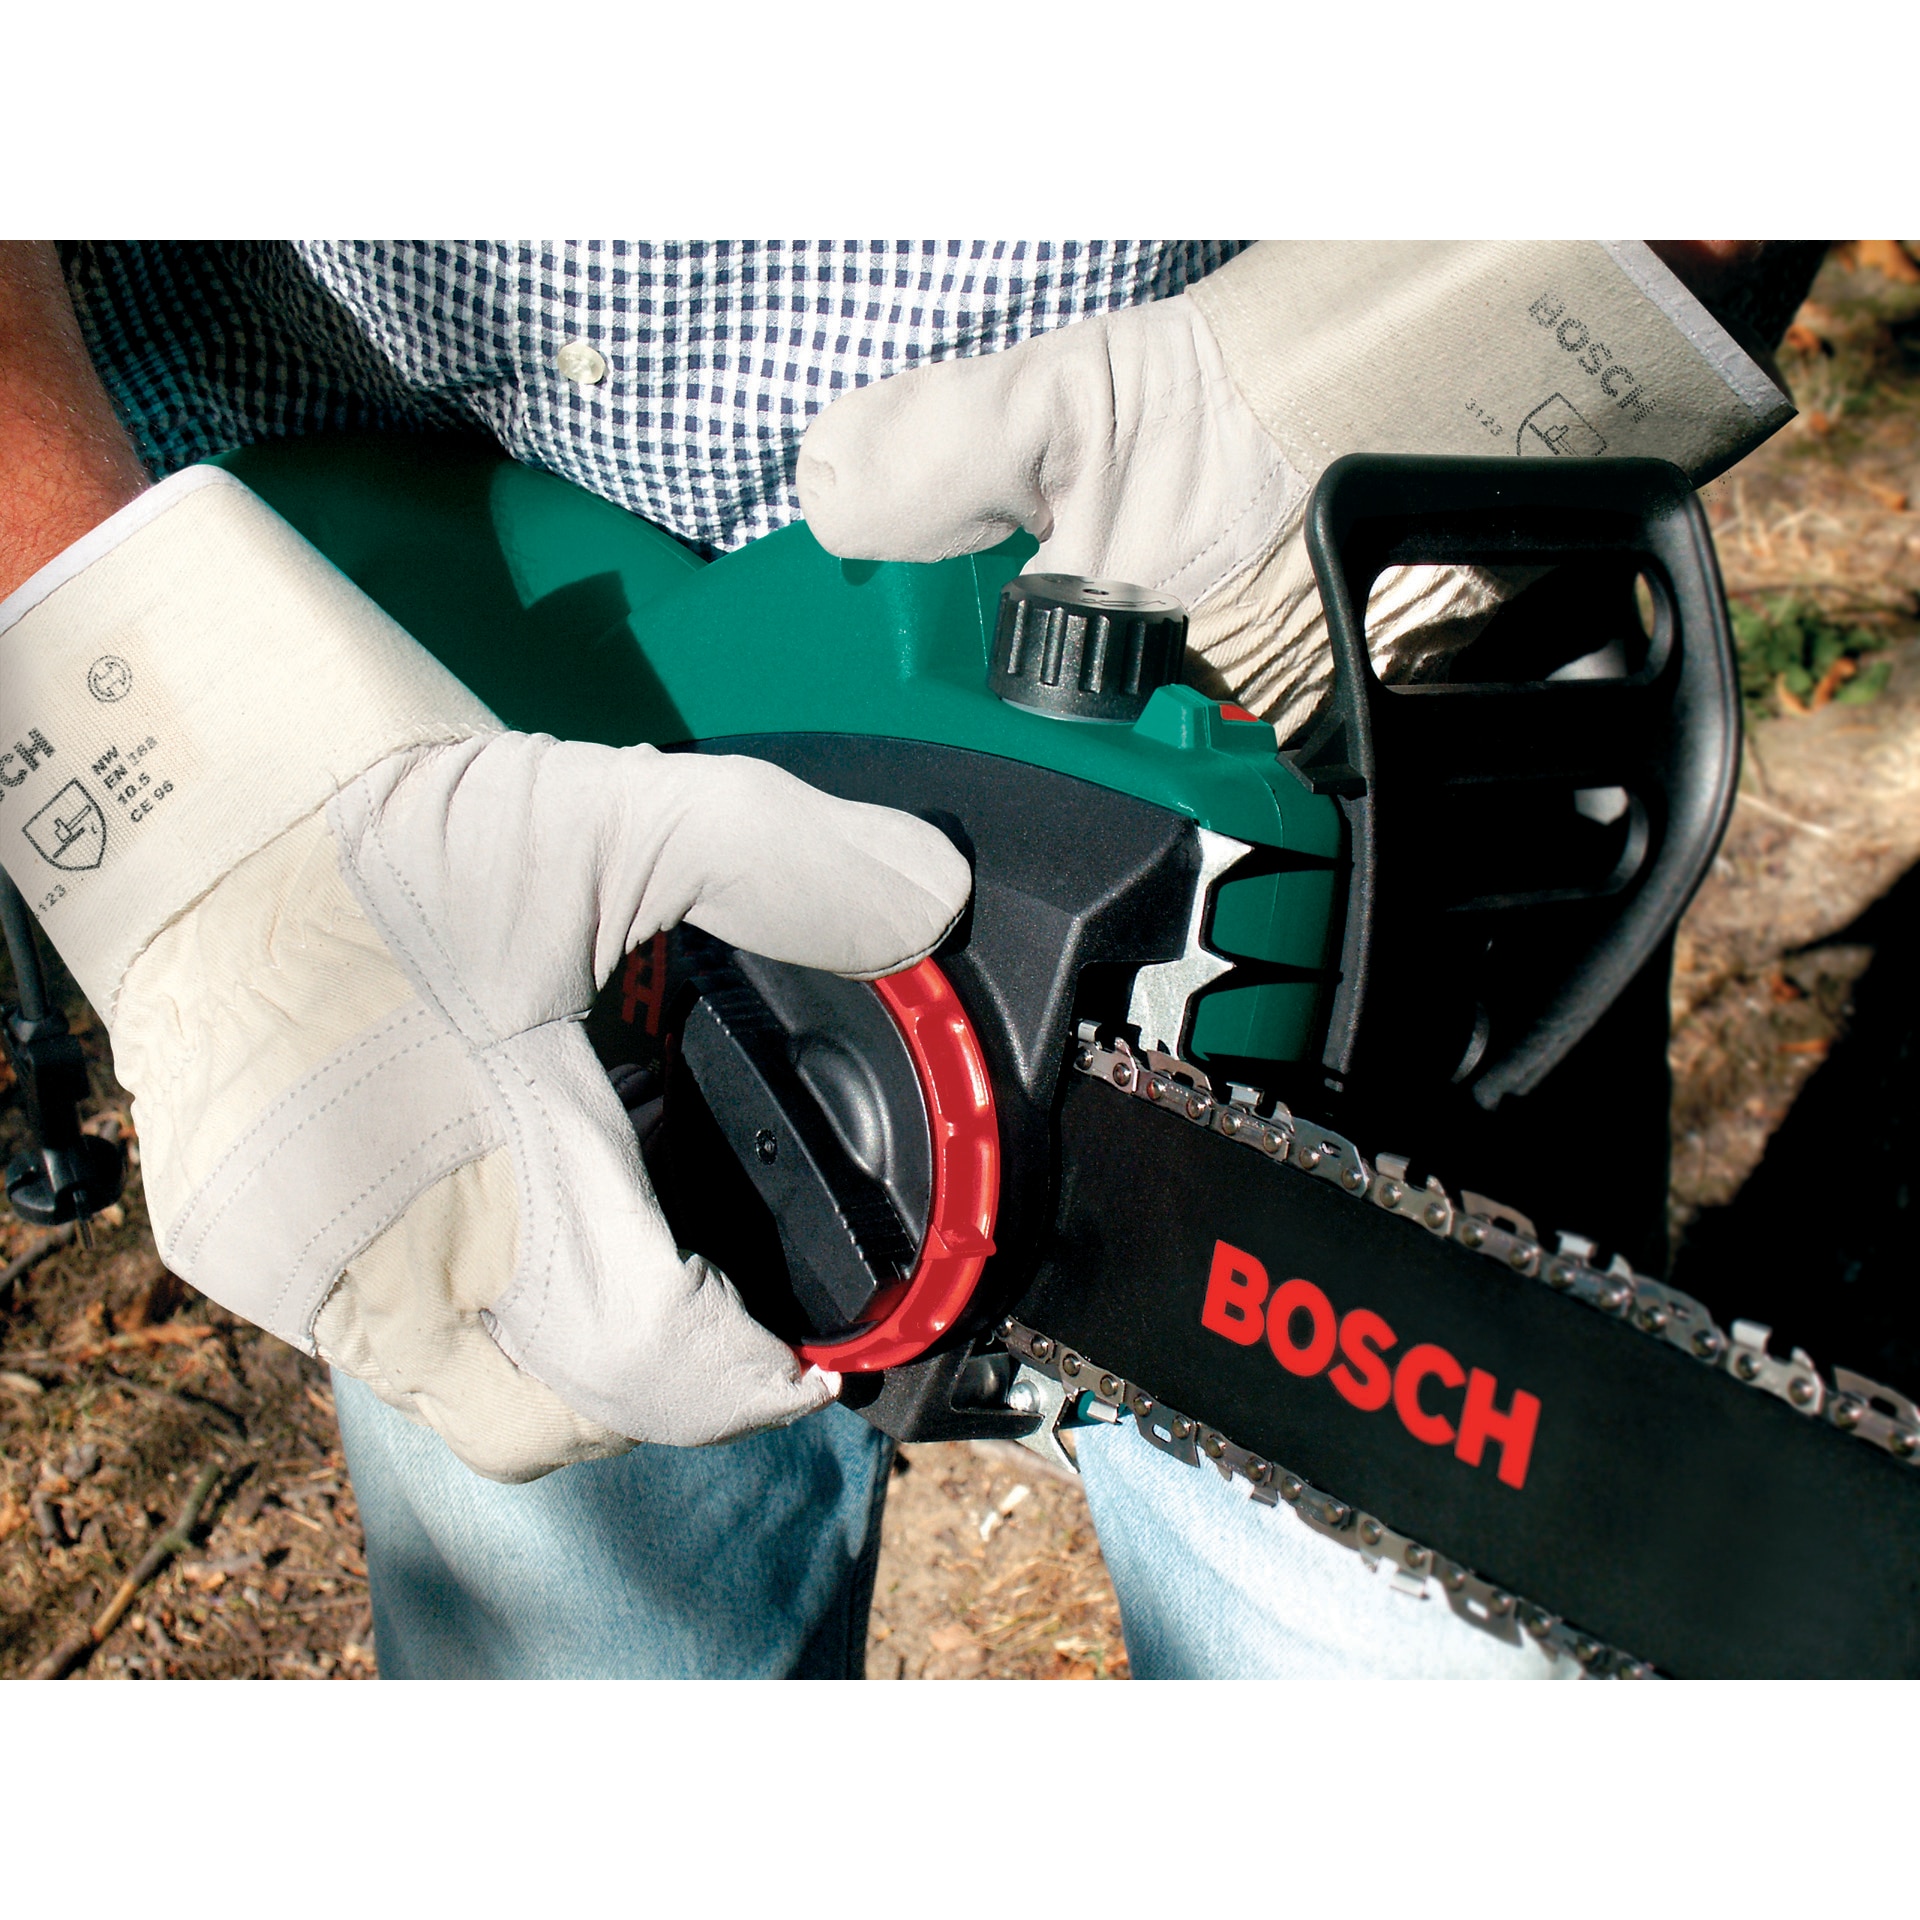 Bosch – Tronçonneuse À Chaine 35cm 1900w – Ake 35-19 S